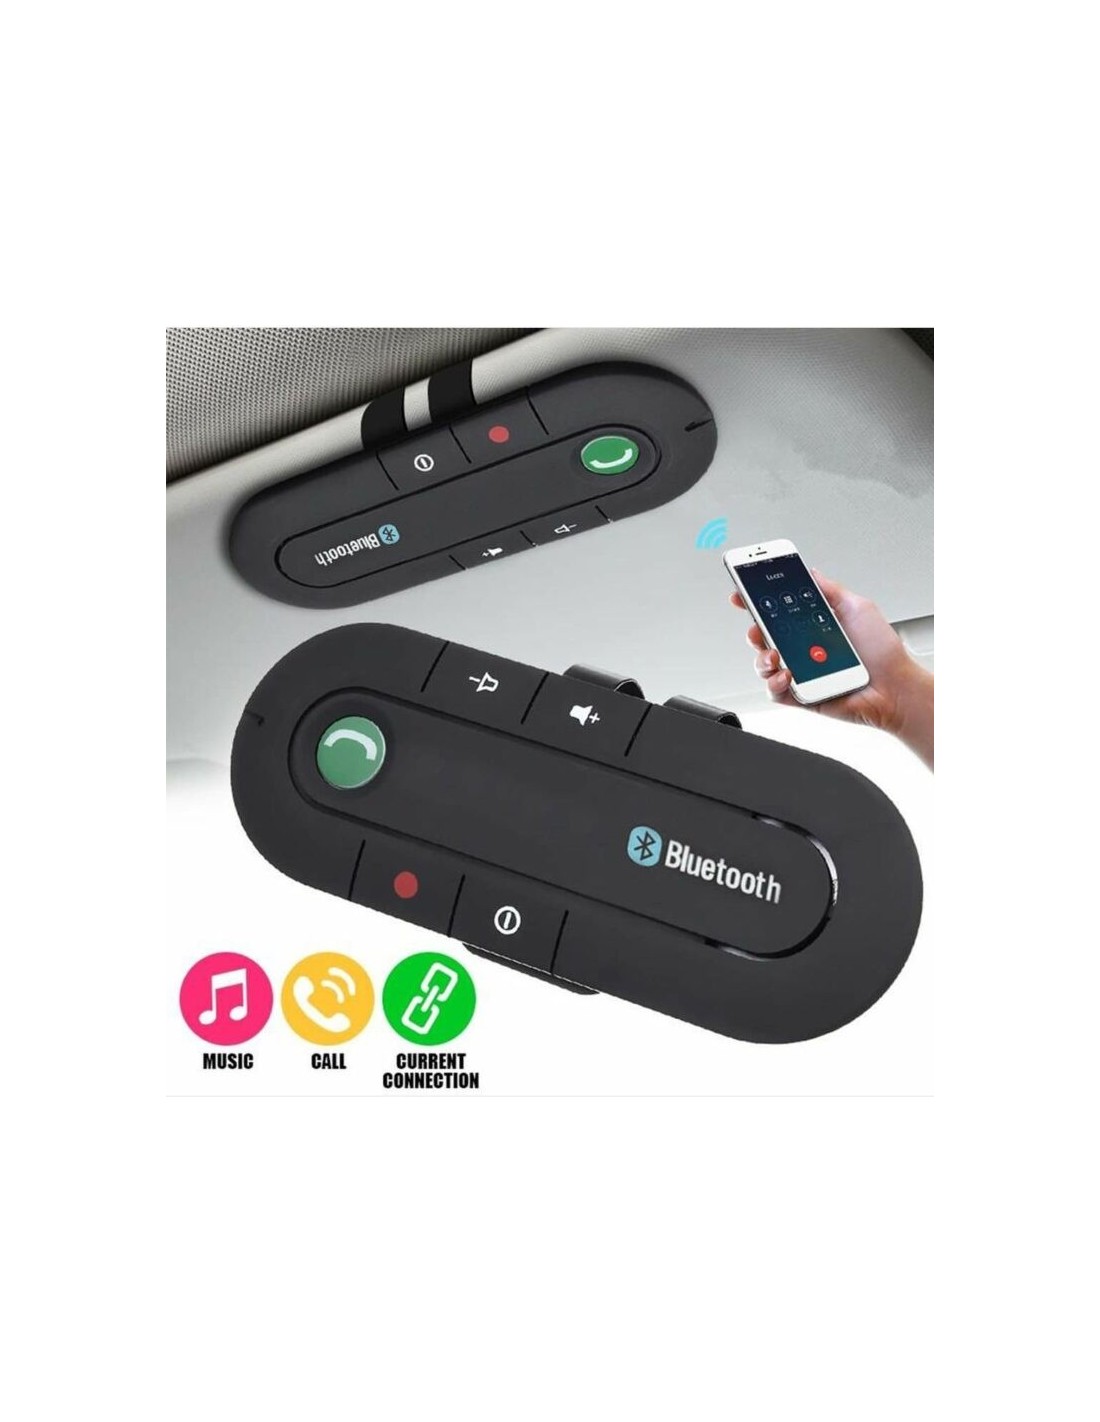 Kit Vivavoce Bluetooth per Auto Con Comandi Vocali, GPS e Musica, supporto  per iPhone 8 Plus 7 Plus 6 S Plus Galaxy S8 Edge S7 S6 note 5 4 3 Ne